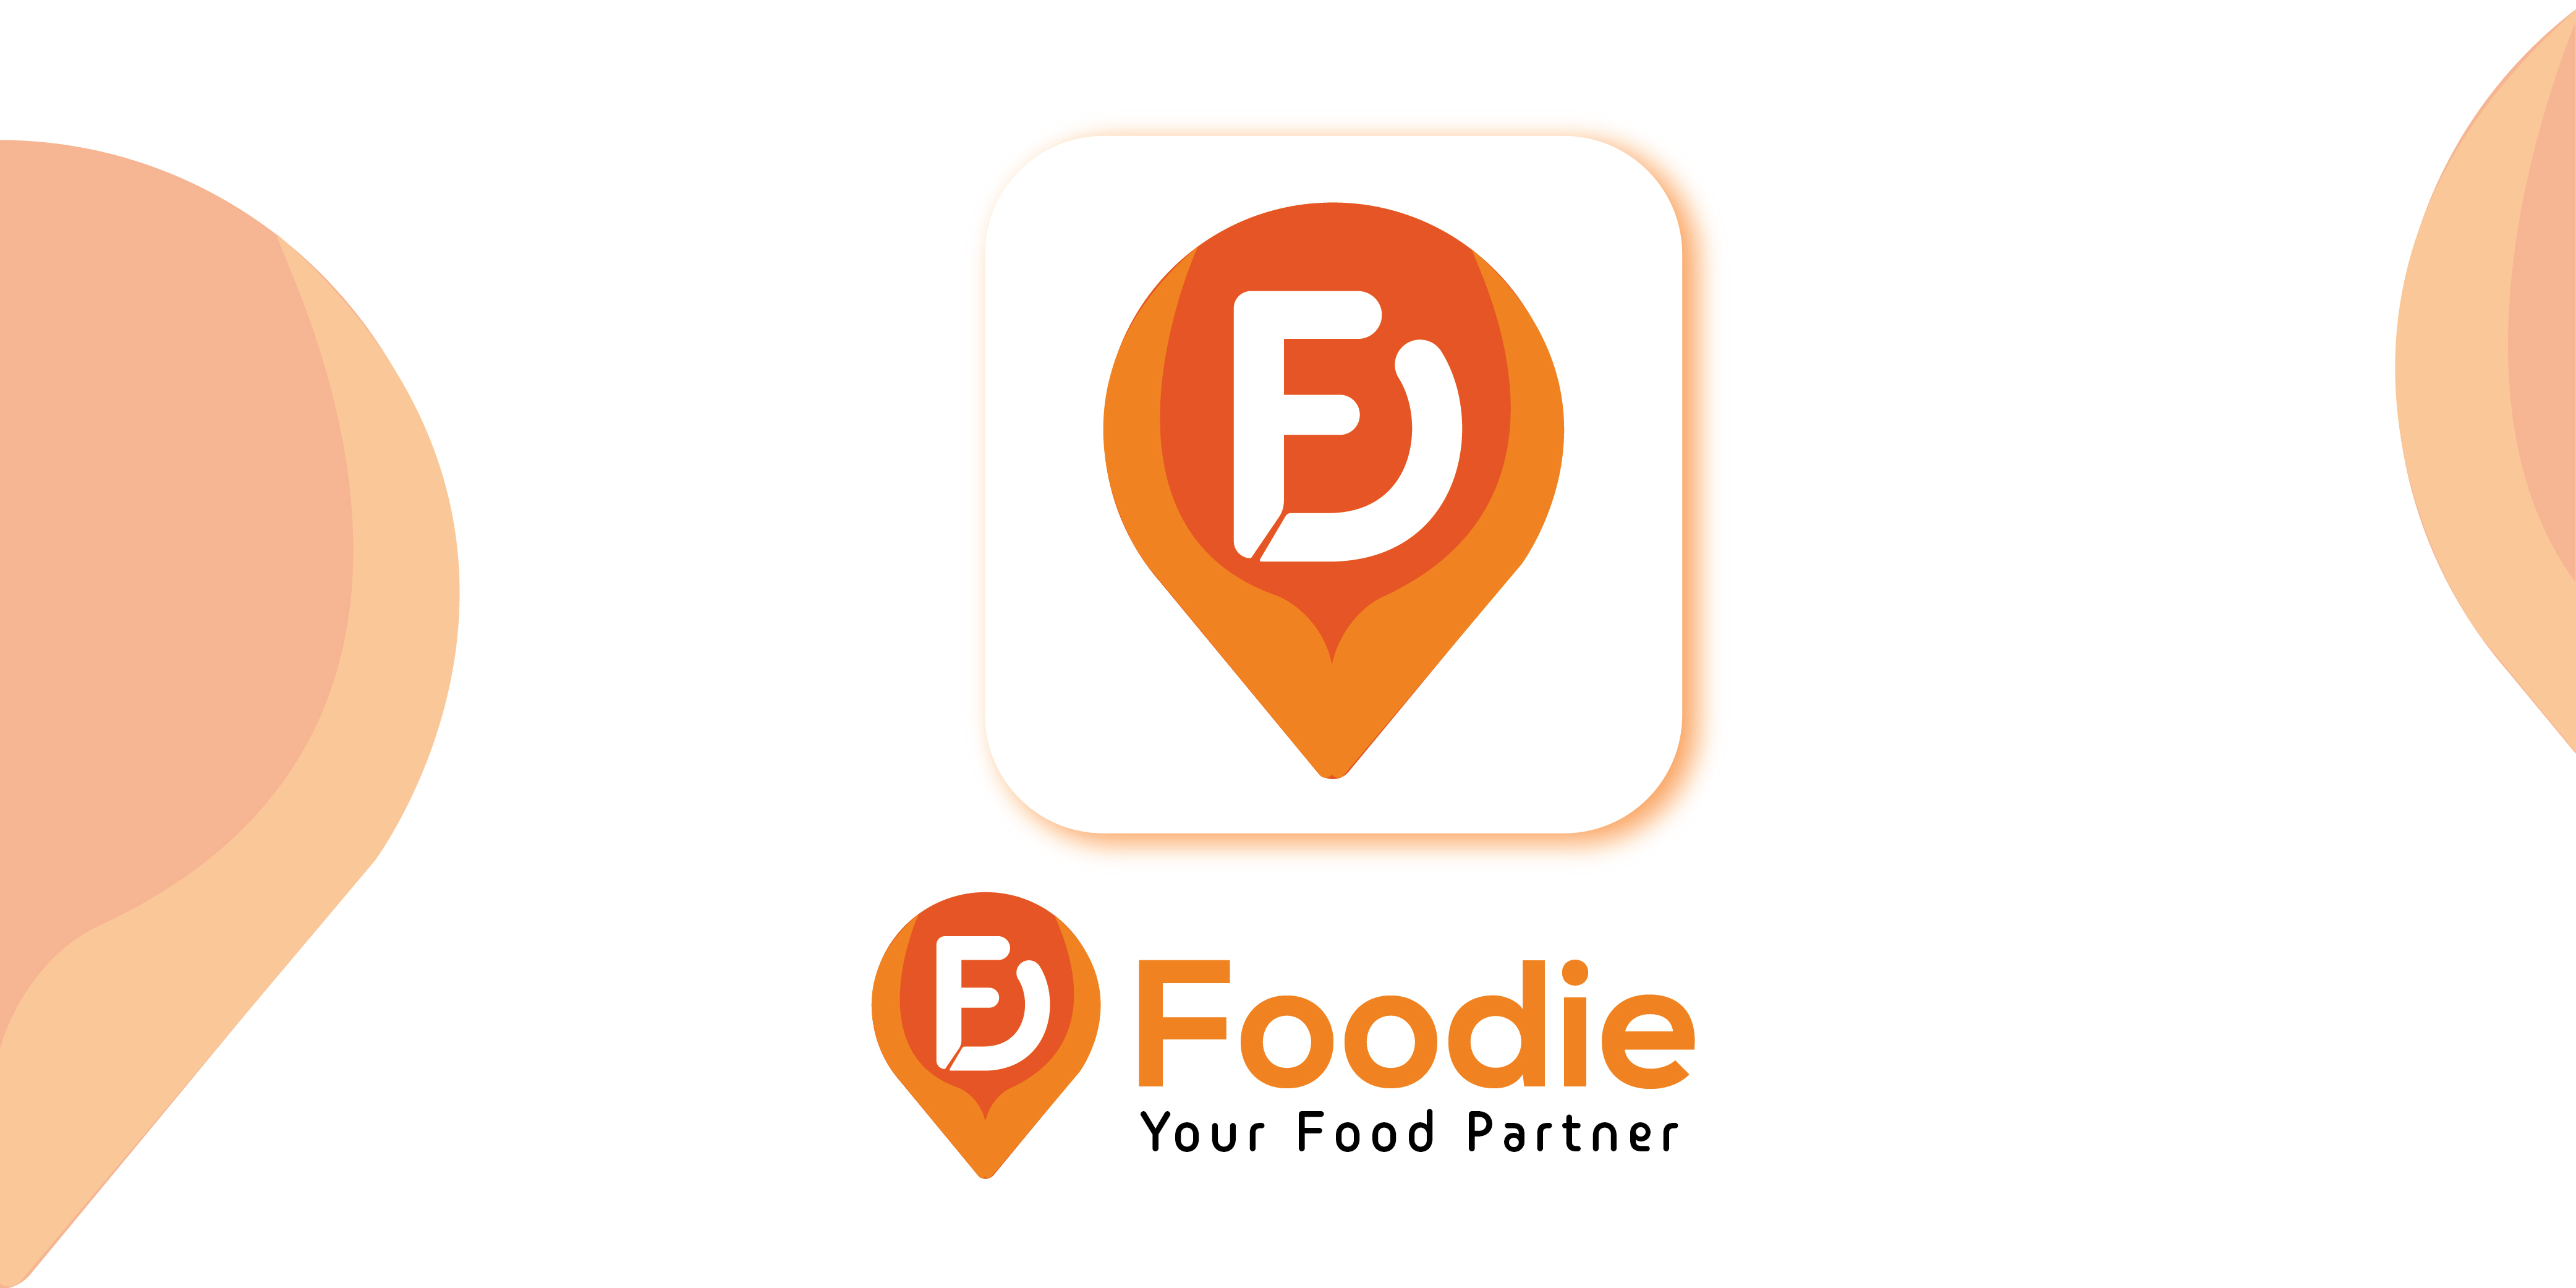 Logo, Symbol, Quick, Bite, Food app, Food delivery, Deliver - UpLabs